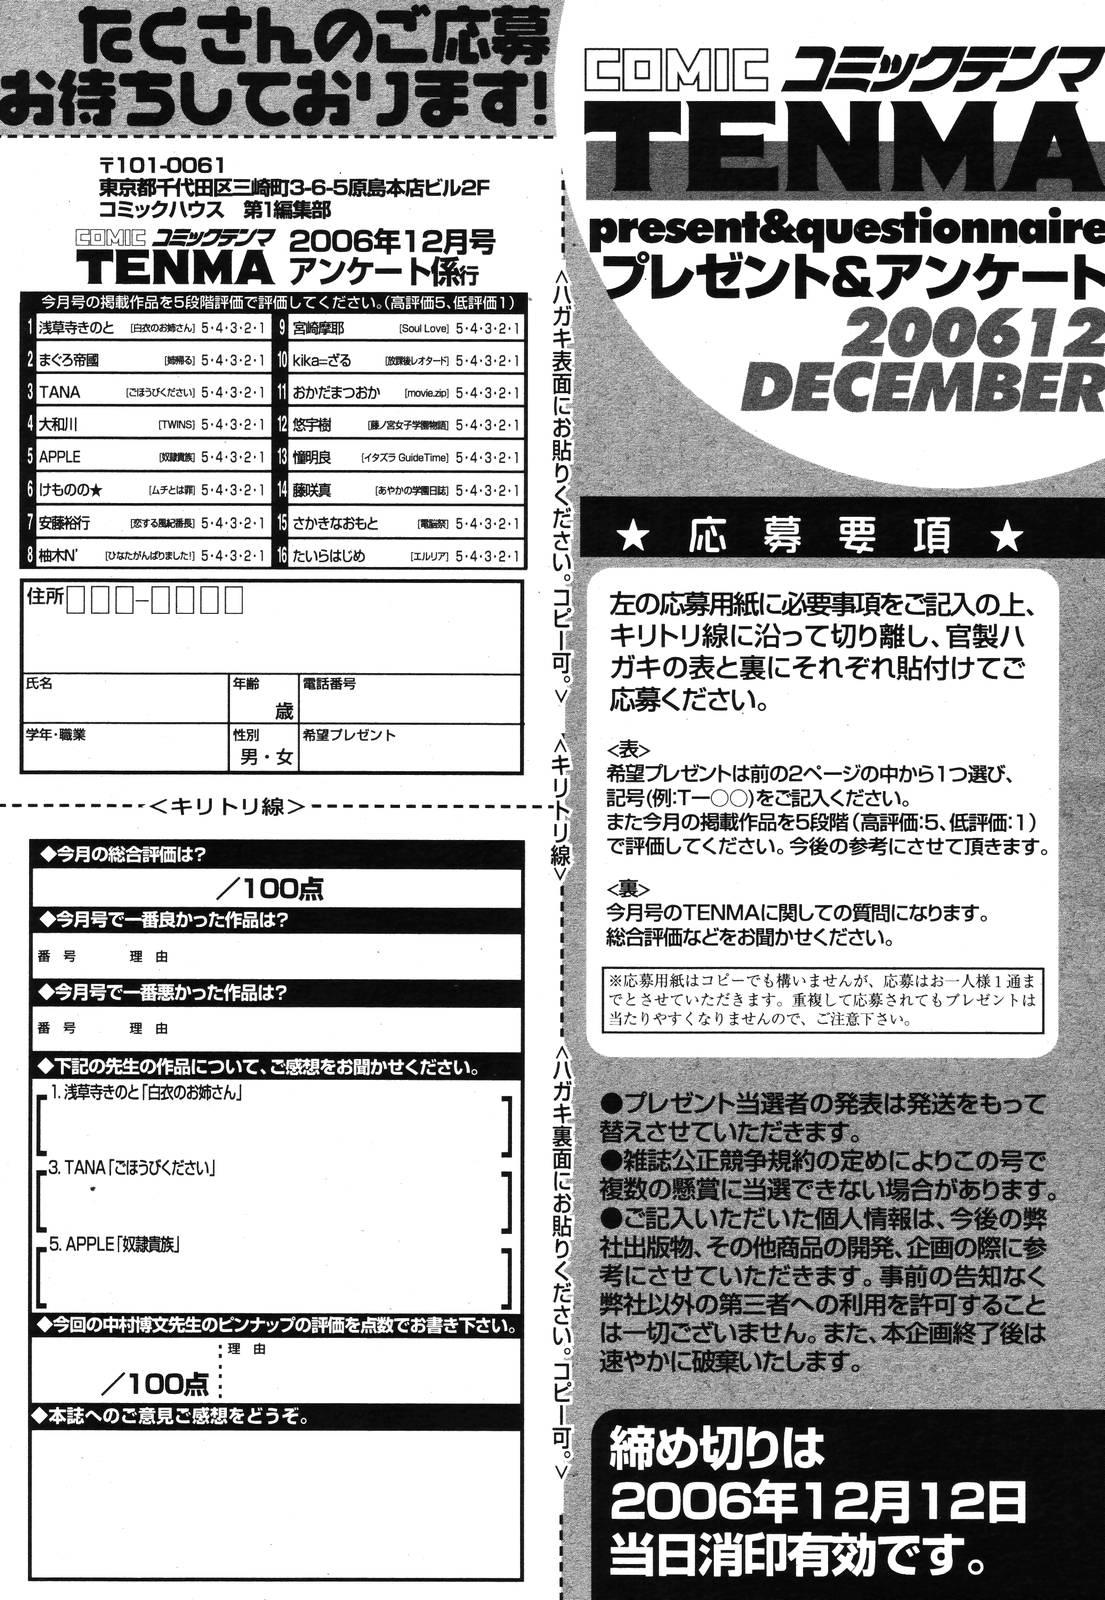 COMIC TENMA 2006-12 356